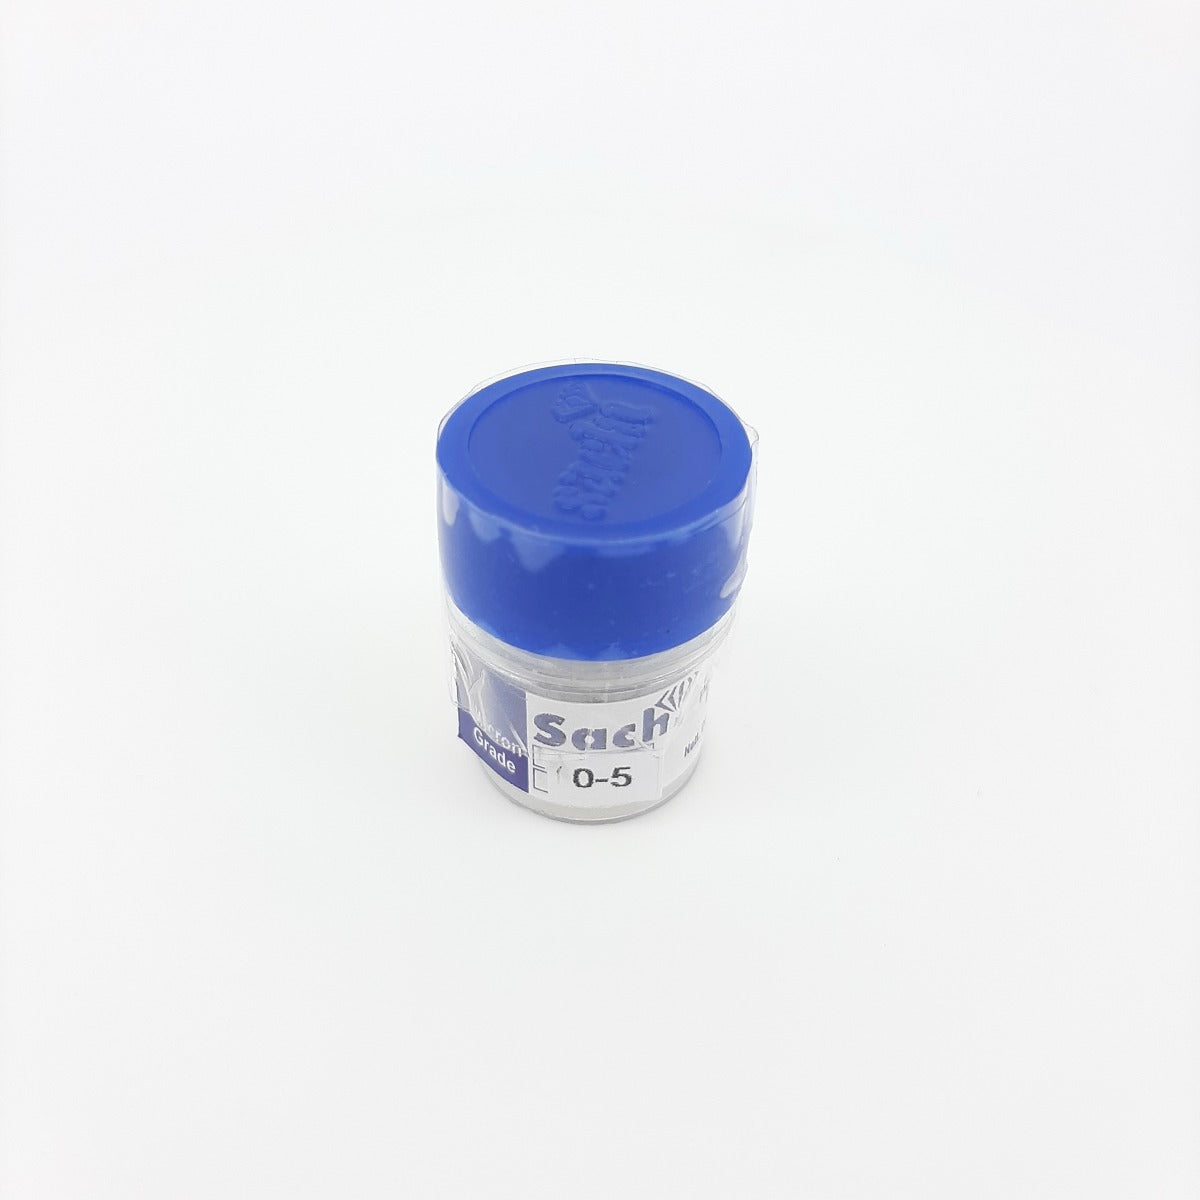 Sachi Diamond Powder-0-5